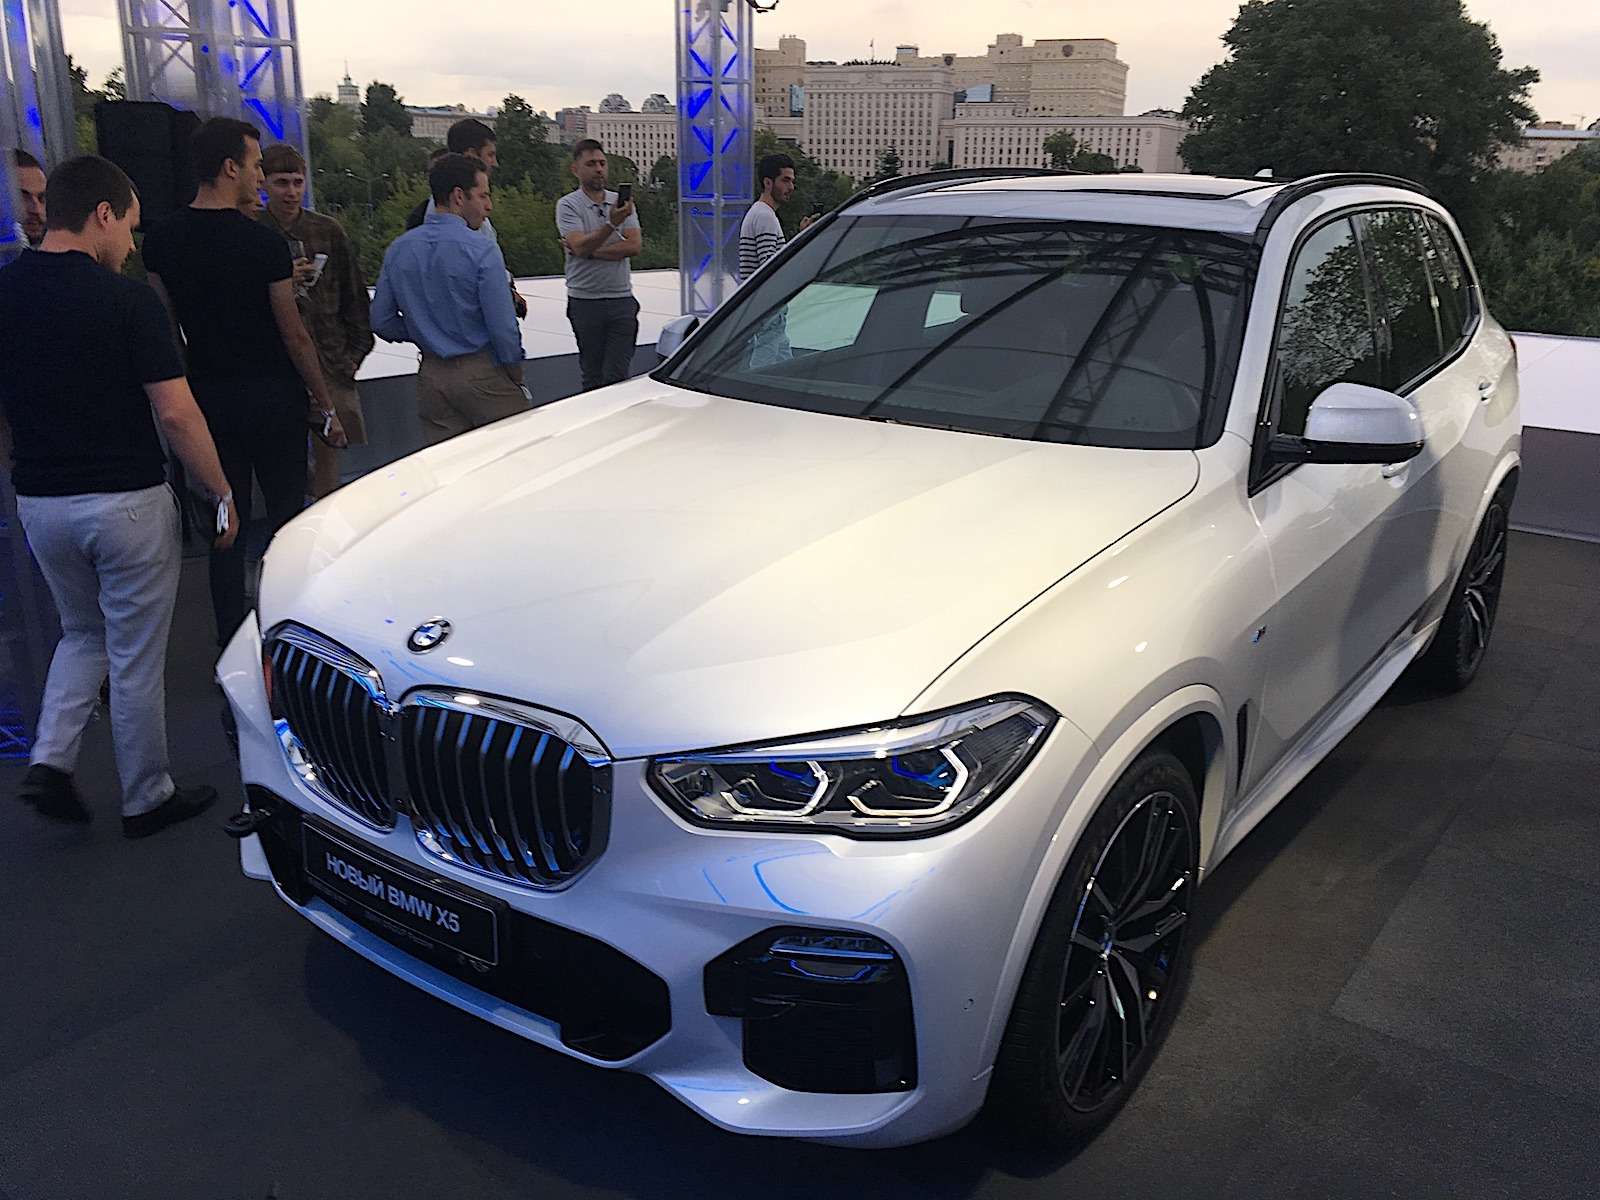 Абсолютно новый BMW X5 всплыл в Москве. Задолго до официальной премьеры! — фото 889841